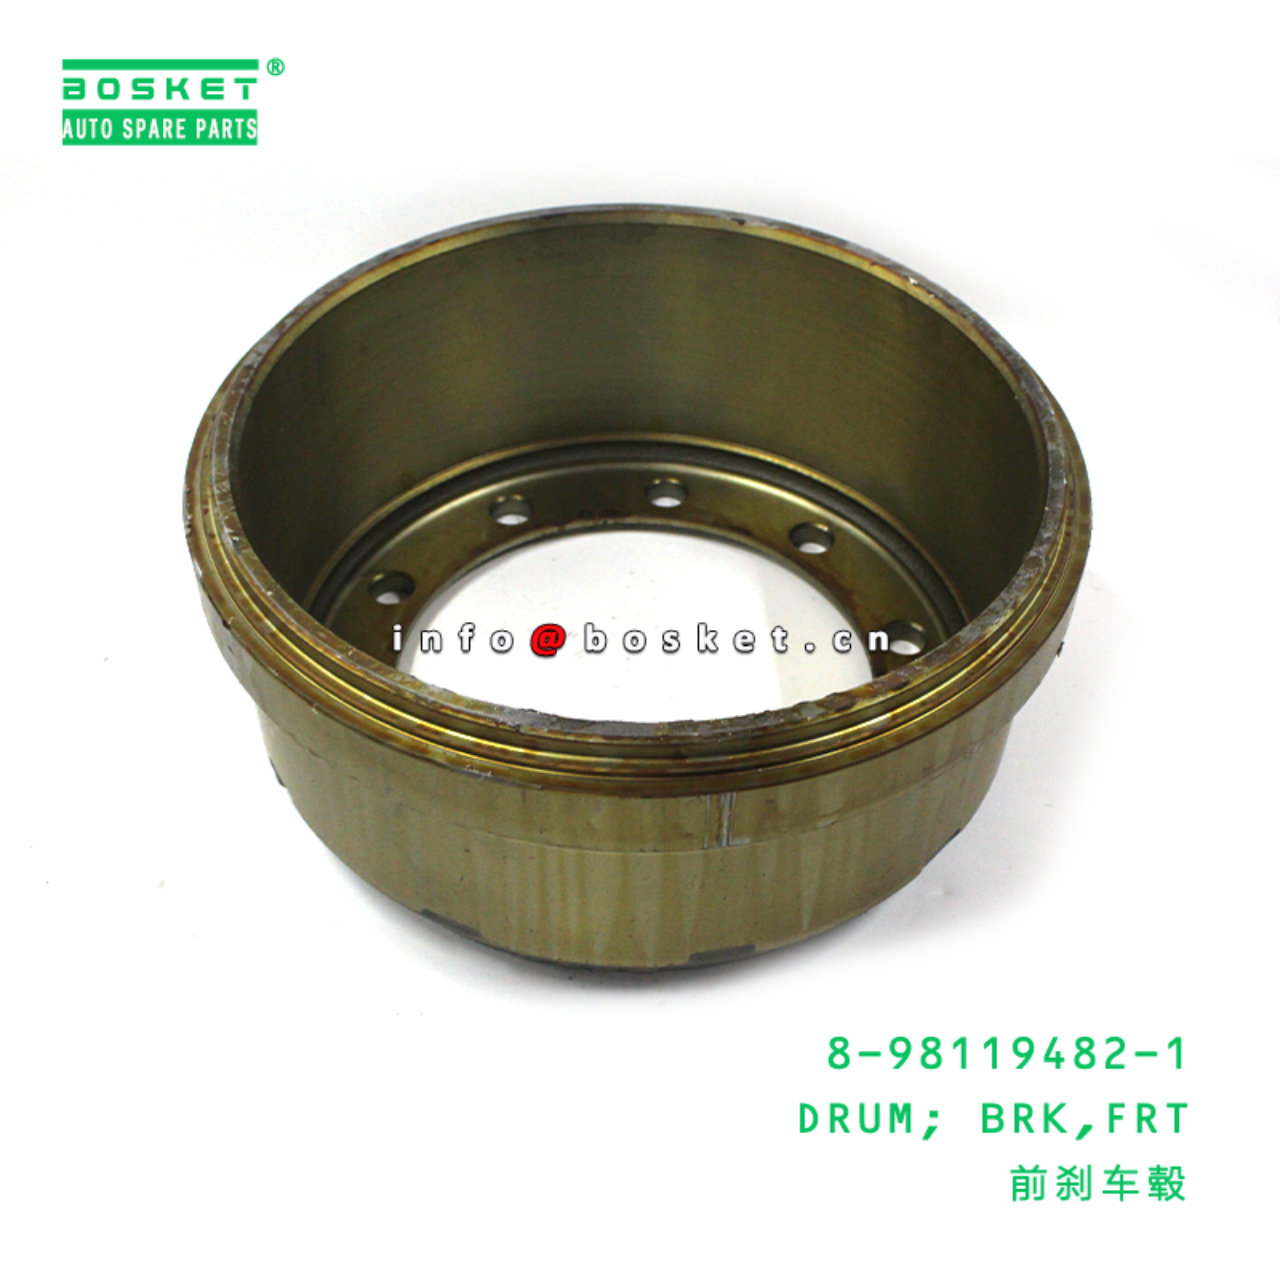 8-98119482-1 Front Brake Drum 8981194821 Suitable for ISUZU CVR